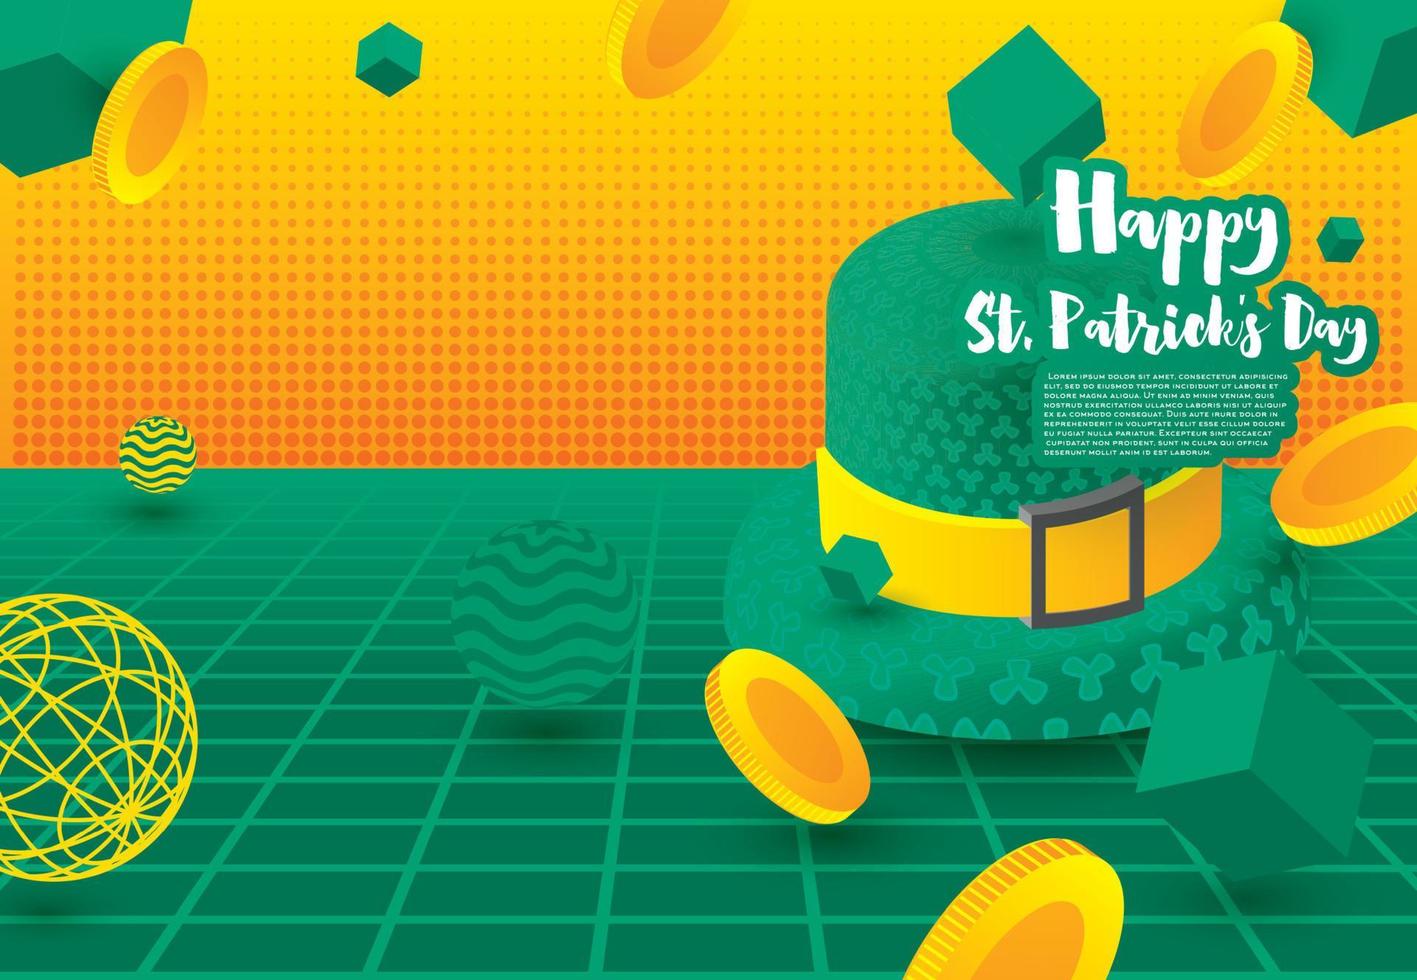 helgon Patricks dag festlig baner med grön 3d hatt och faller gyllene mynt med grön kuber och sfärer. vektor